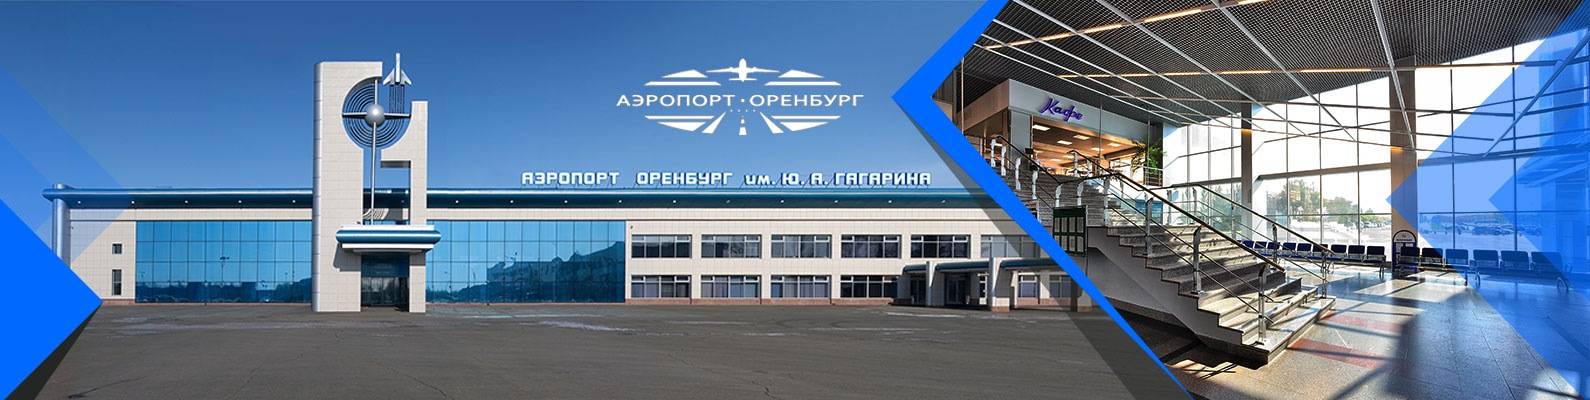 Аэропорт оренбург (центральный, имени ю.а. гагарина): обзор оренбургского аэропорта, услуги, адрес, телефон и другая справочная информация